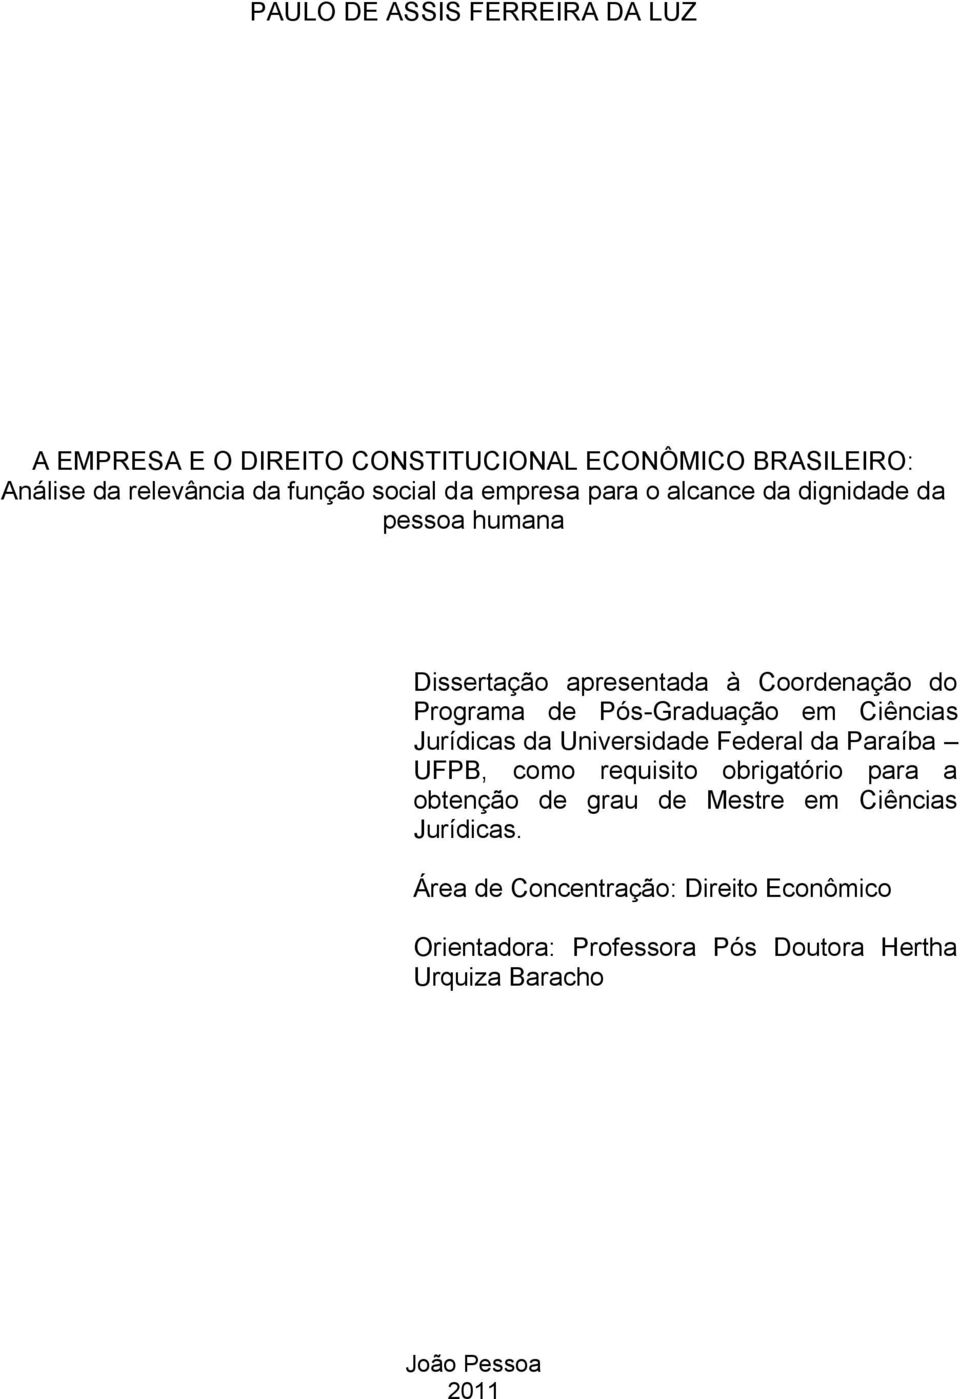 Ciências Jurídicas da Universidade Federal da Paraíba UFPB, como requisito obrigatório para a obtenção de grau de Mestre em